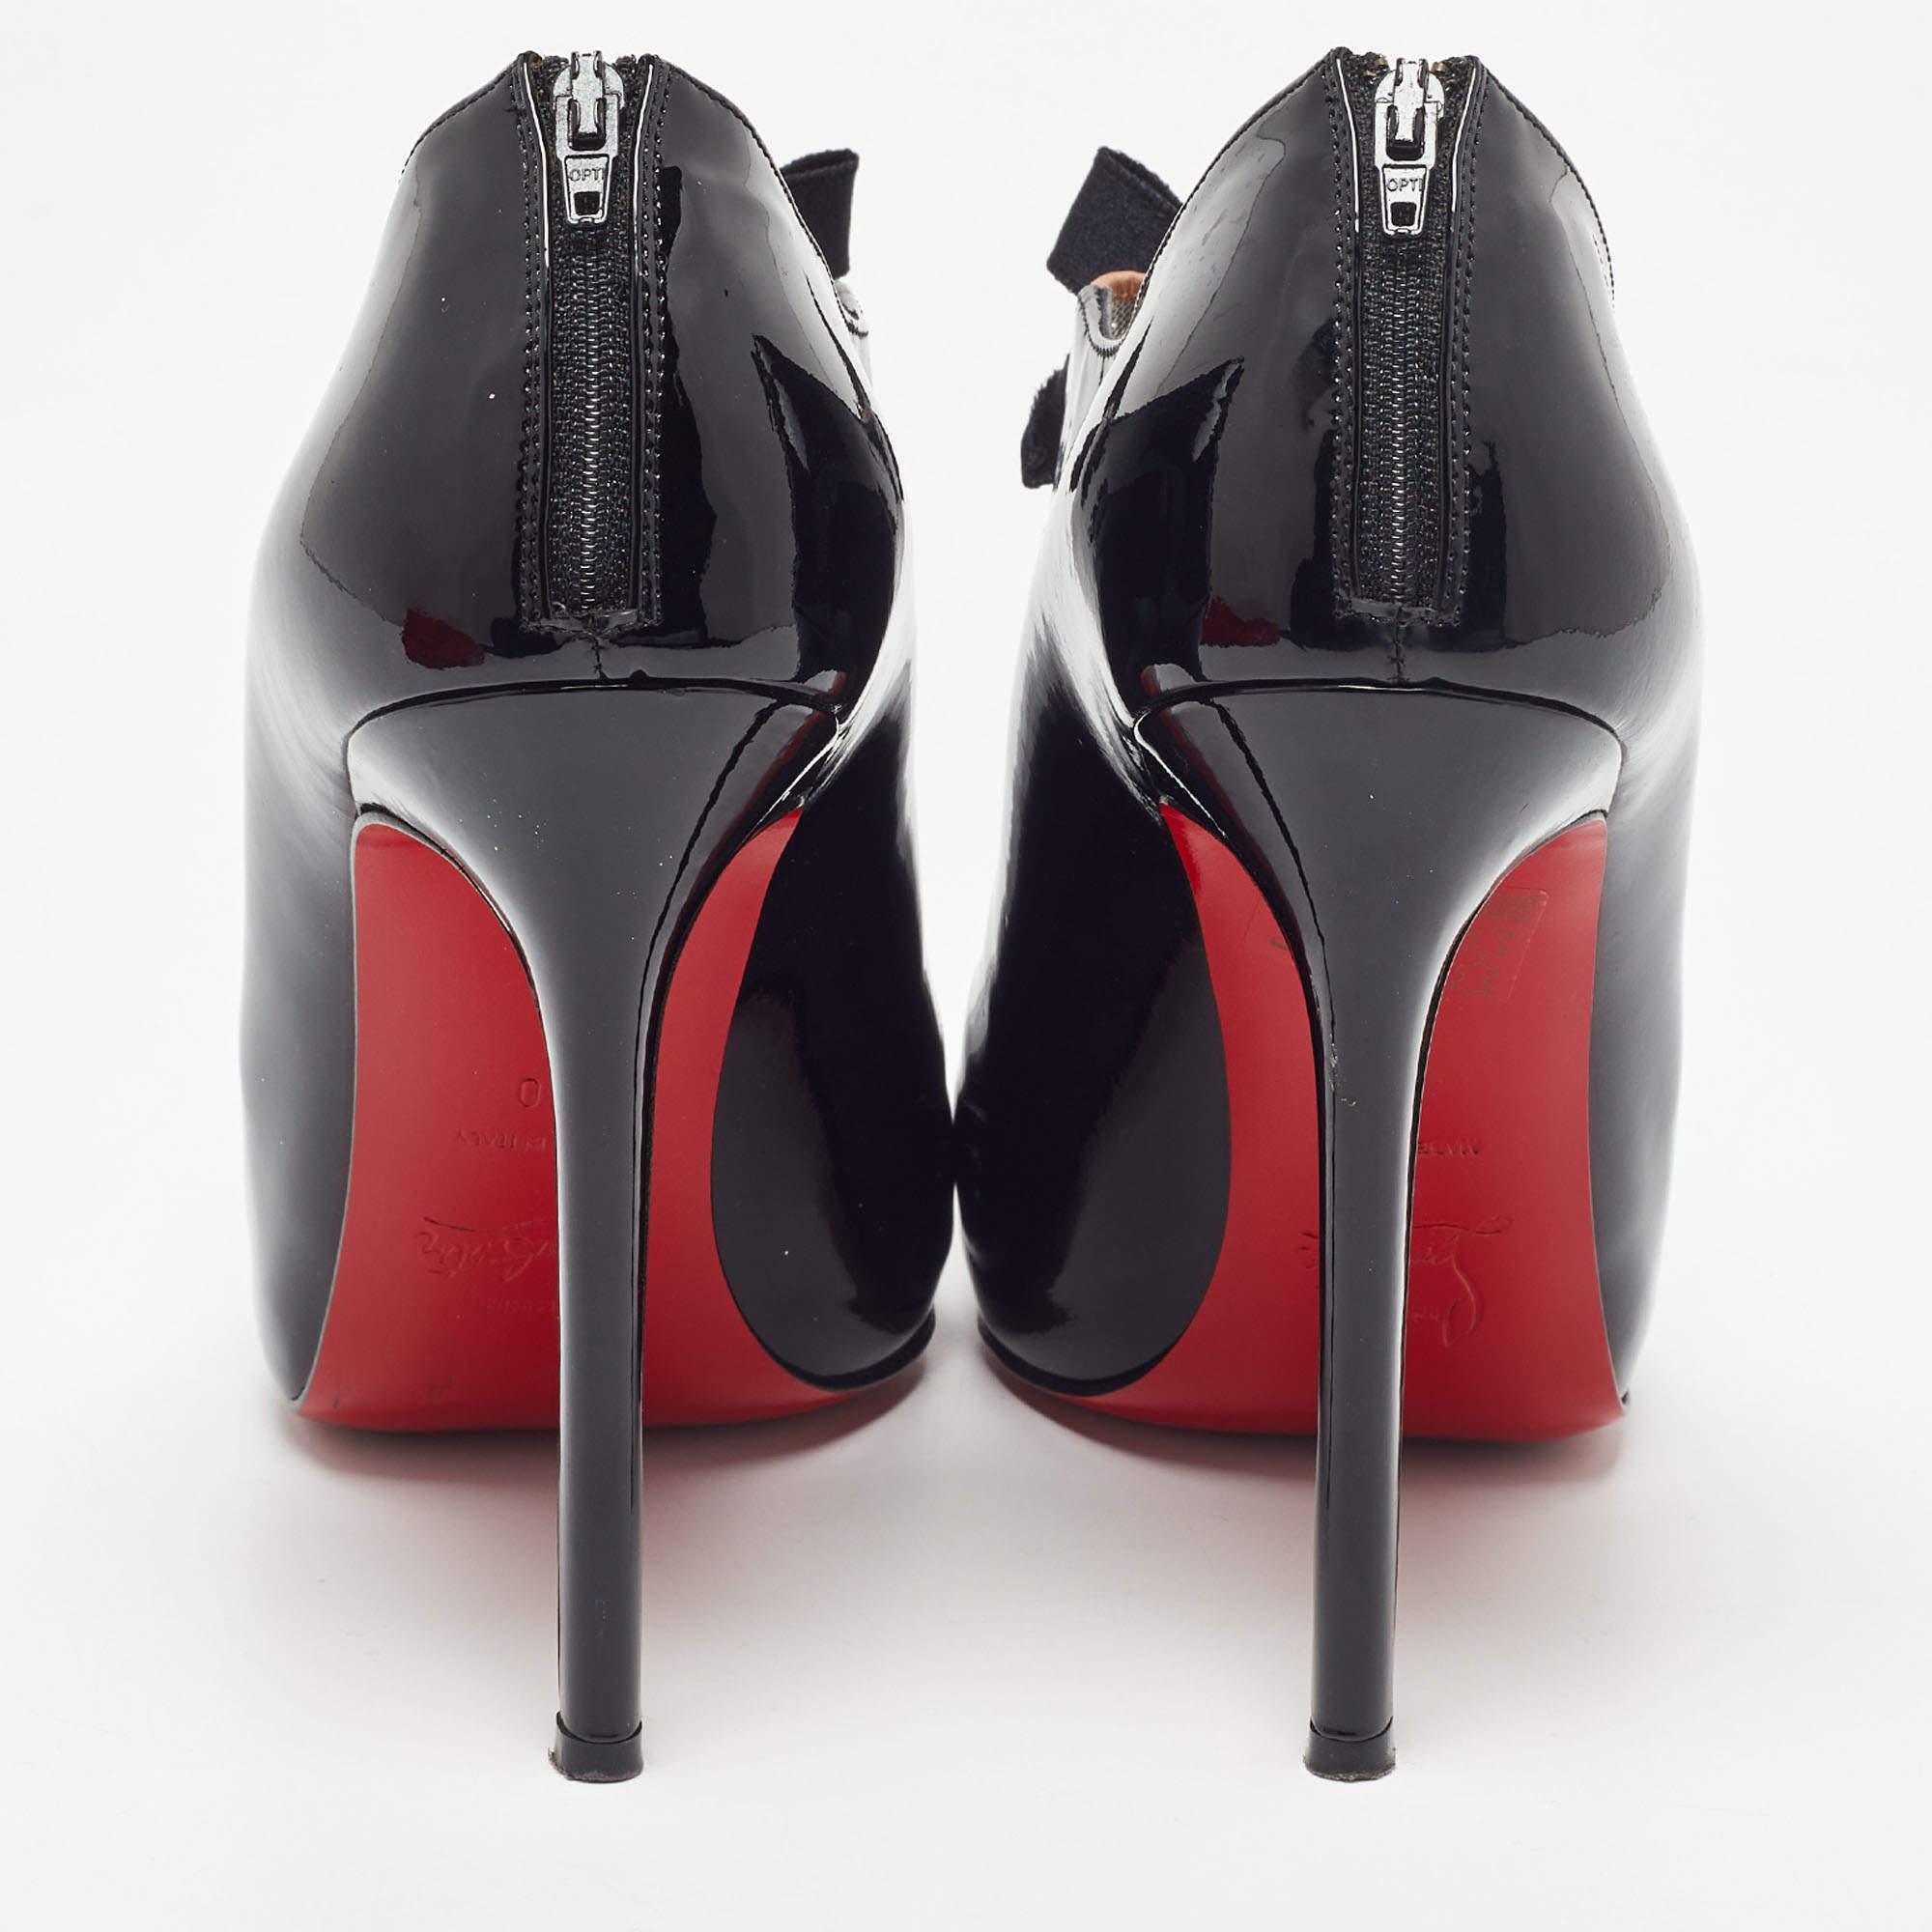 Ergänzen Sie Ihr gut zusammengestelltes Outfit mit diesen authentischen Christian Louboutin Schuhen. Sie sind zeitlos und stilvoll und verfügen über eine erstaunliche Konstruktion für dauerhafte Qualität und bequemen Sitz.

